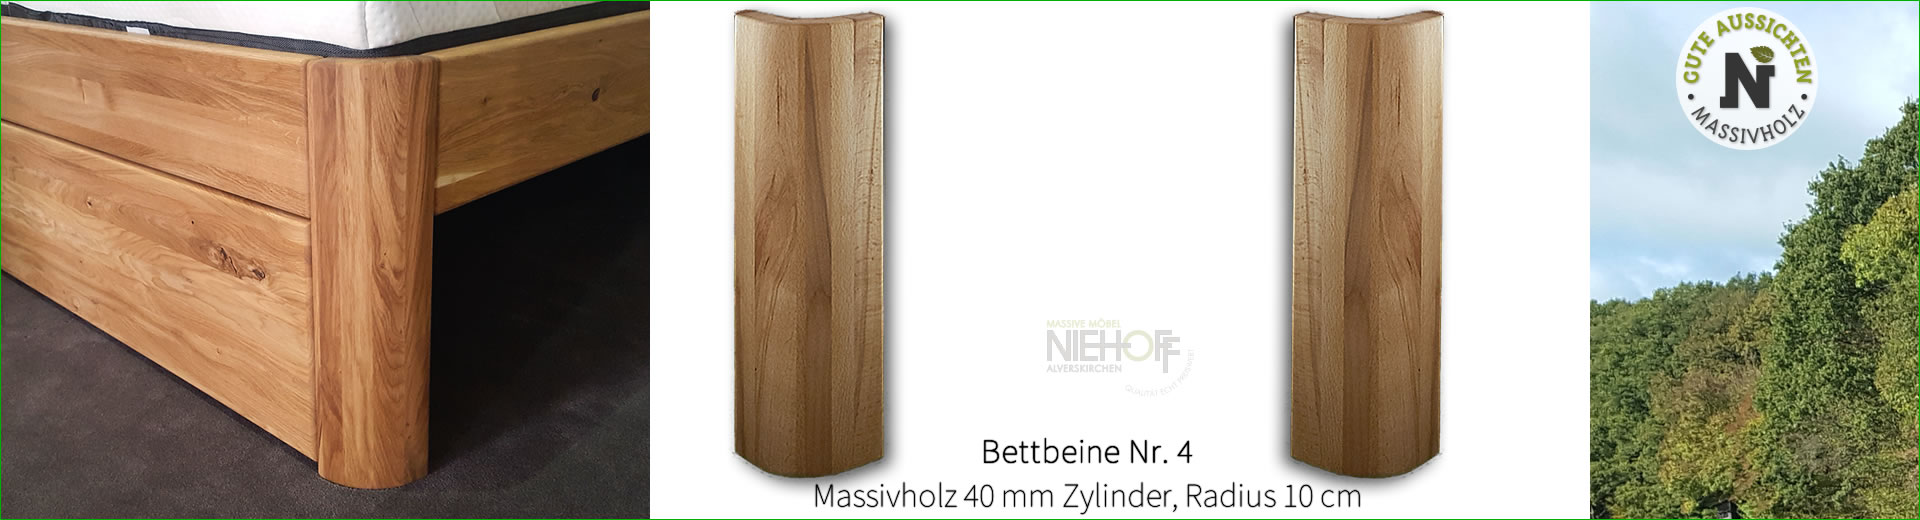 Bettbeine Nr. 3, Massivholz 40 mm rund, Radius 10 cm, Höhe 54 cm